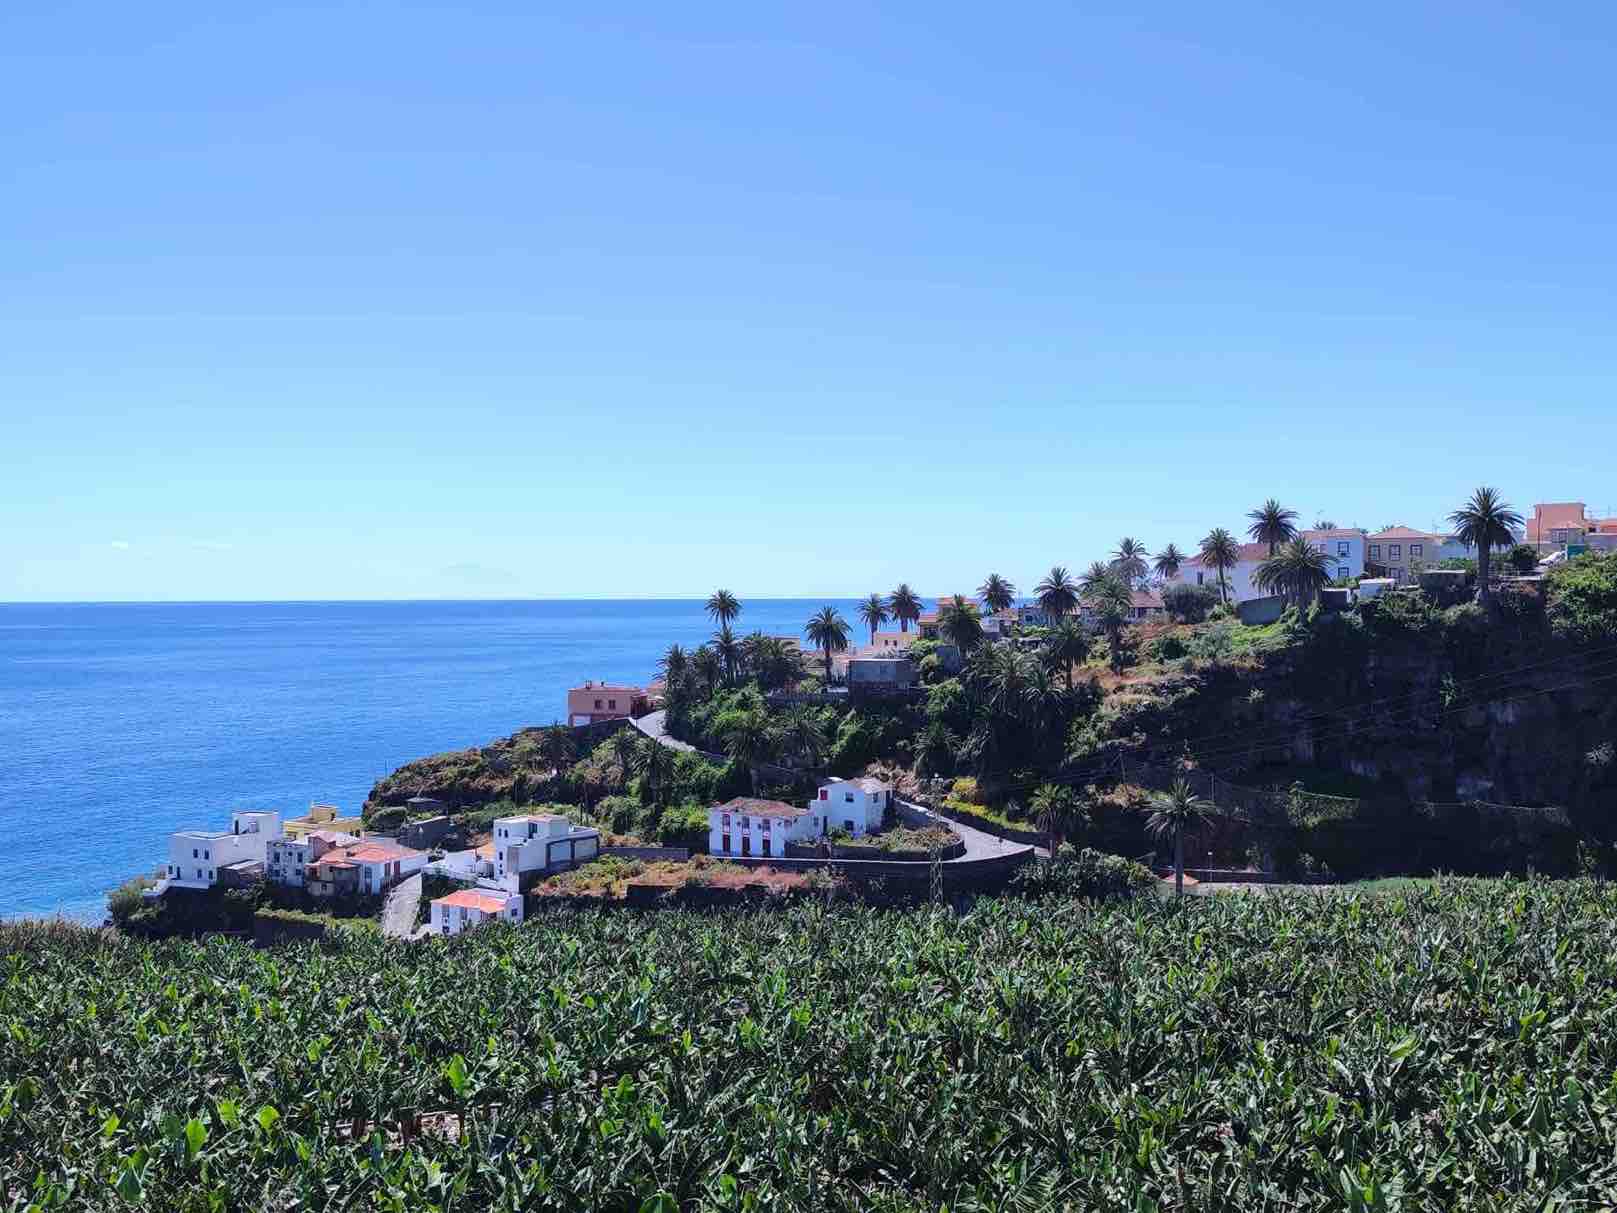 Coalición Canaria propone un plan integral para la Villa de San Andrés